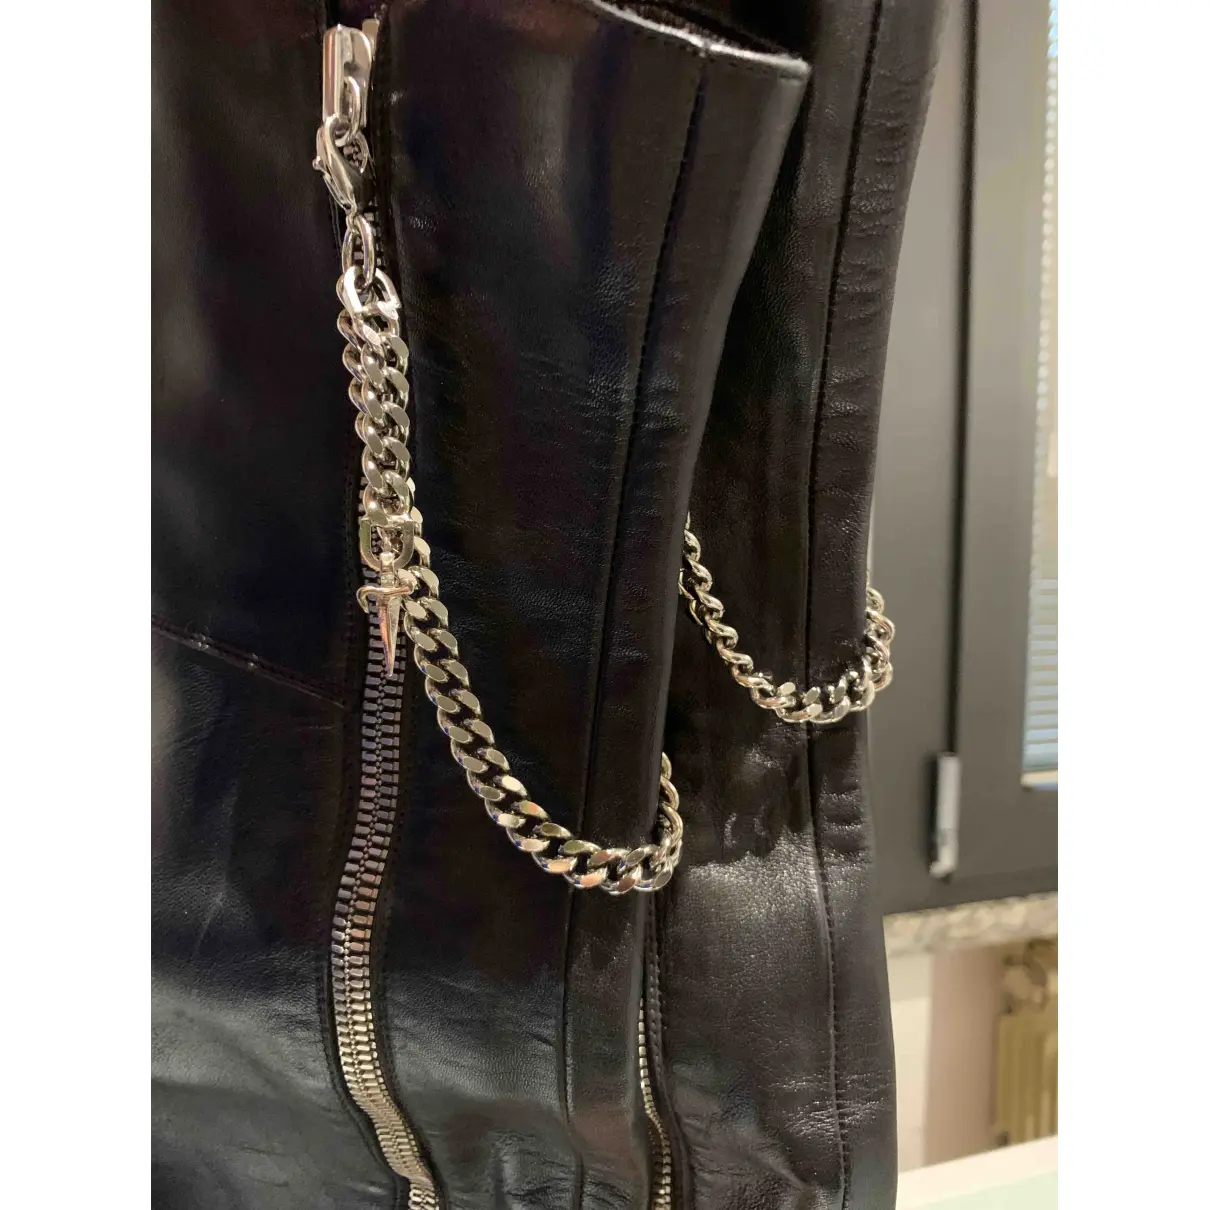 Leather boots Cesare Paciotti